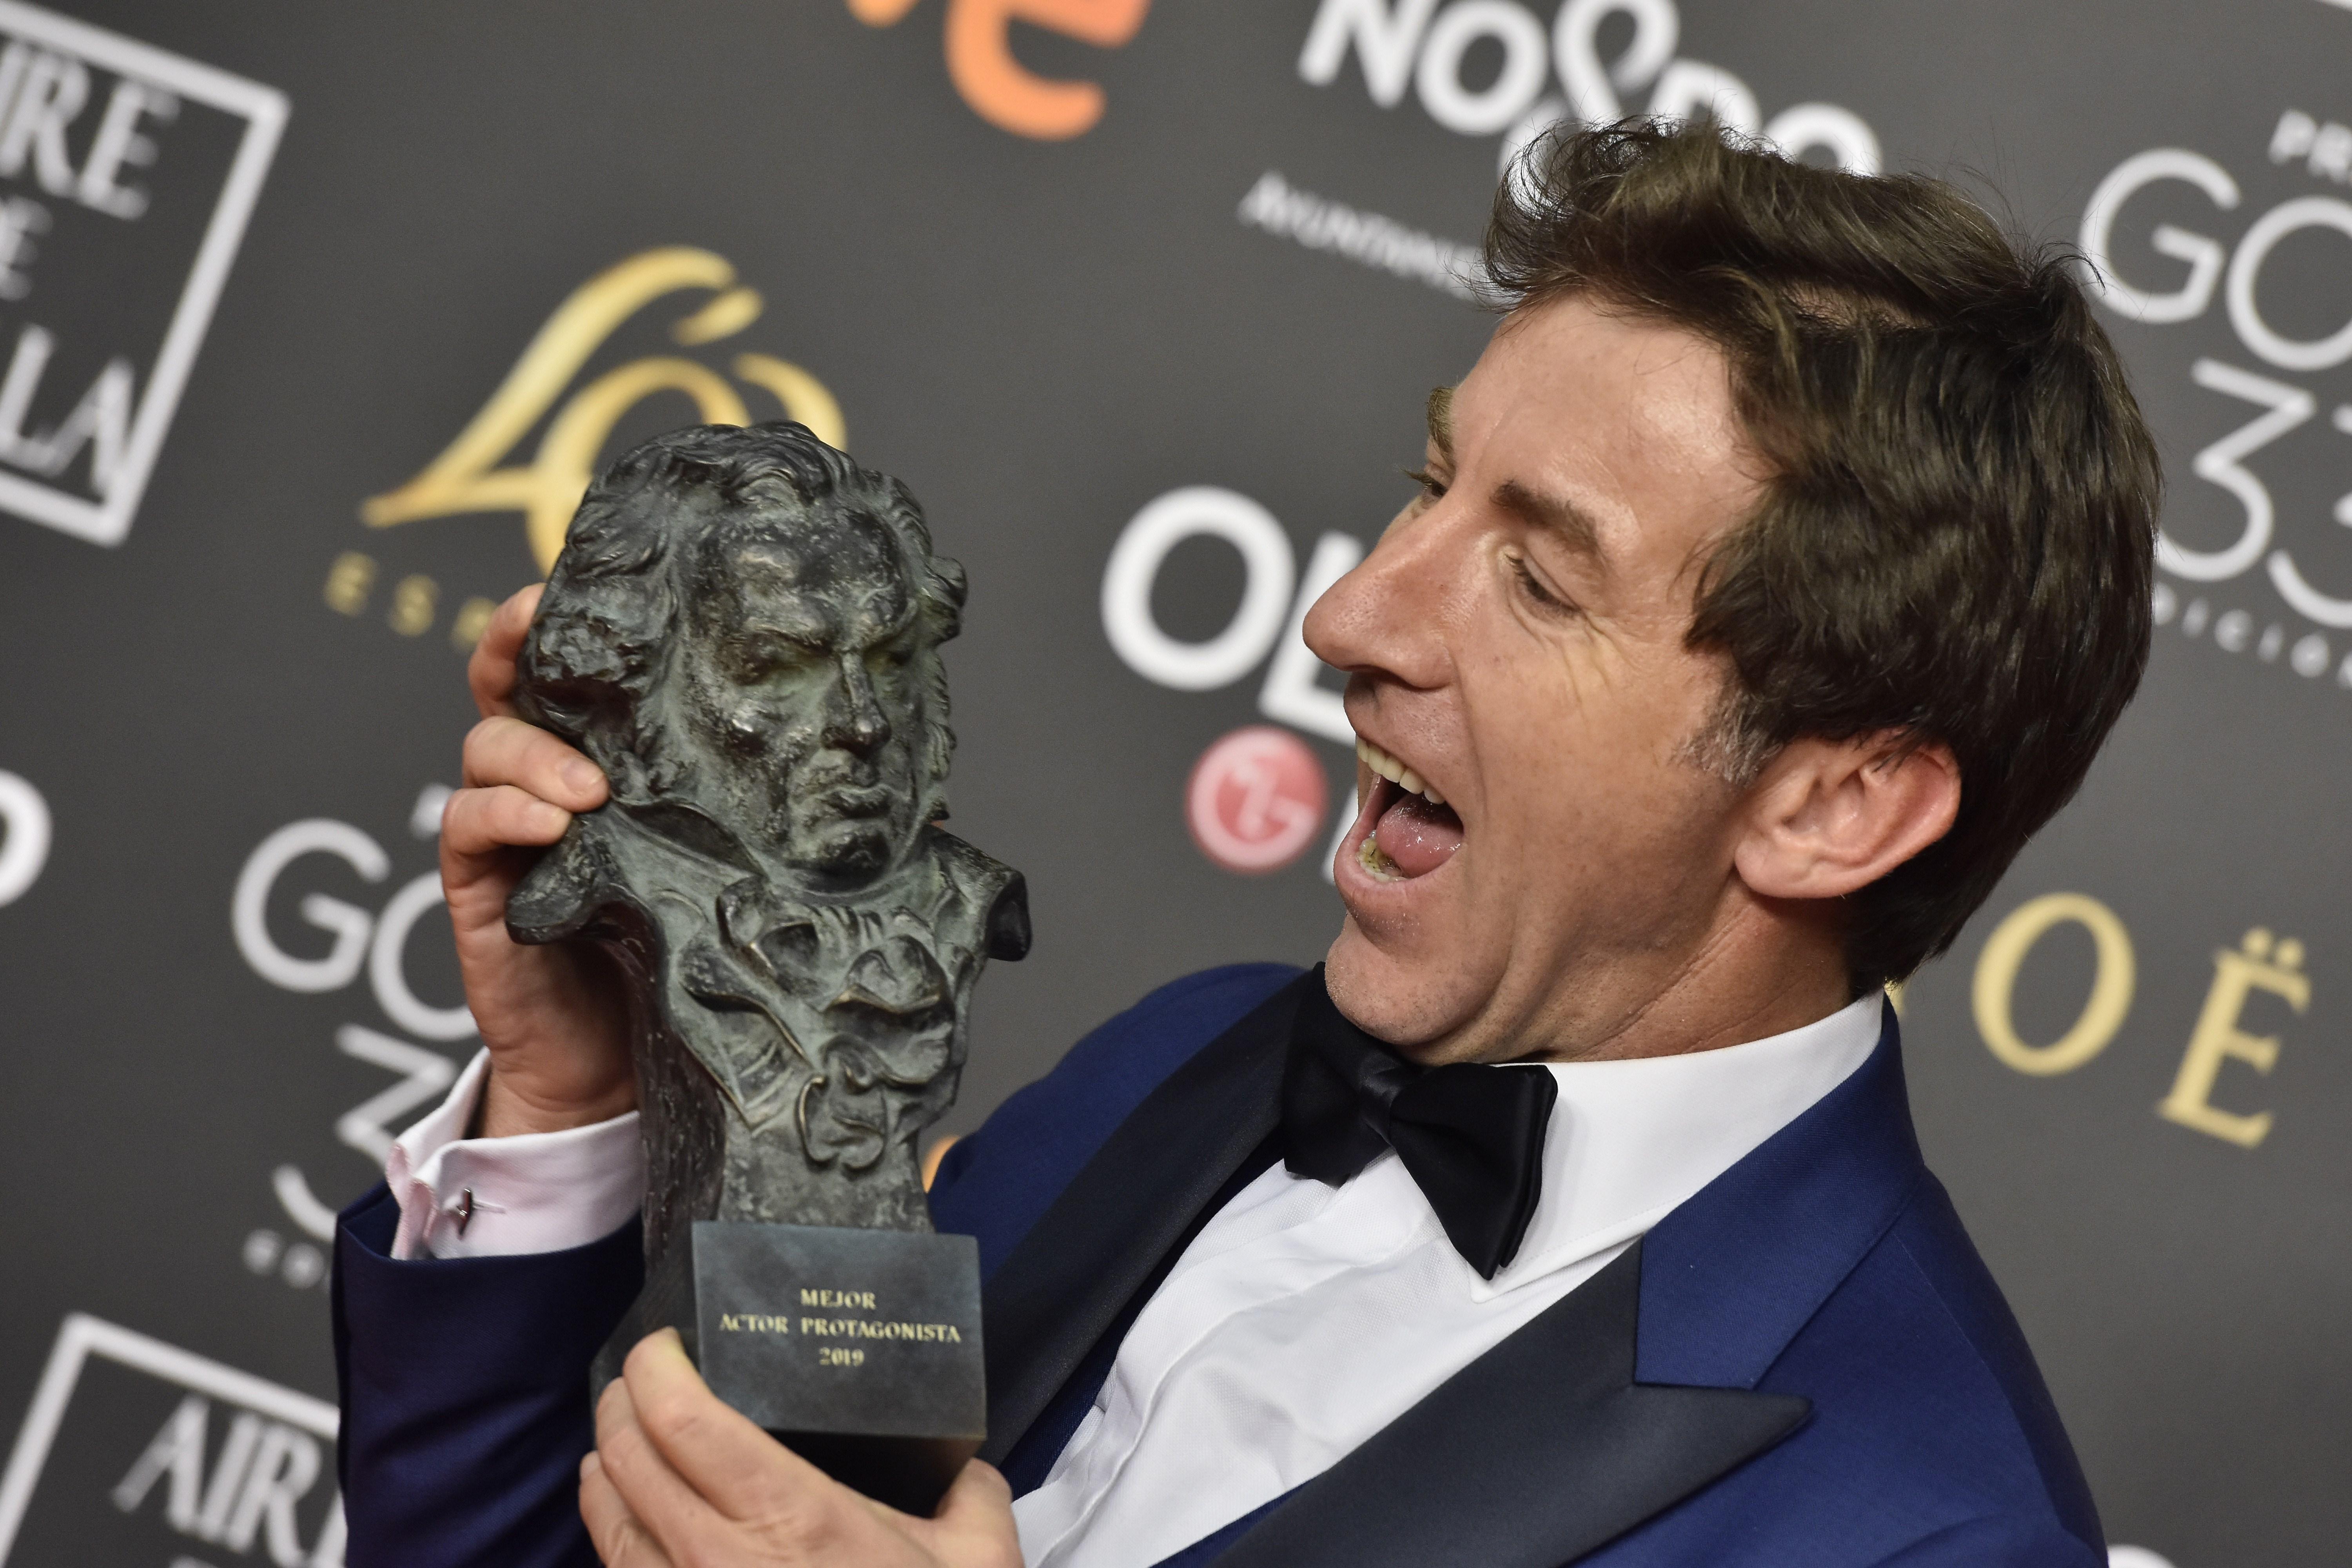 La xarxa s'encén amb l'actor guanyador del Goya pel que ha dit dels presos a TV3